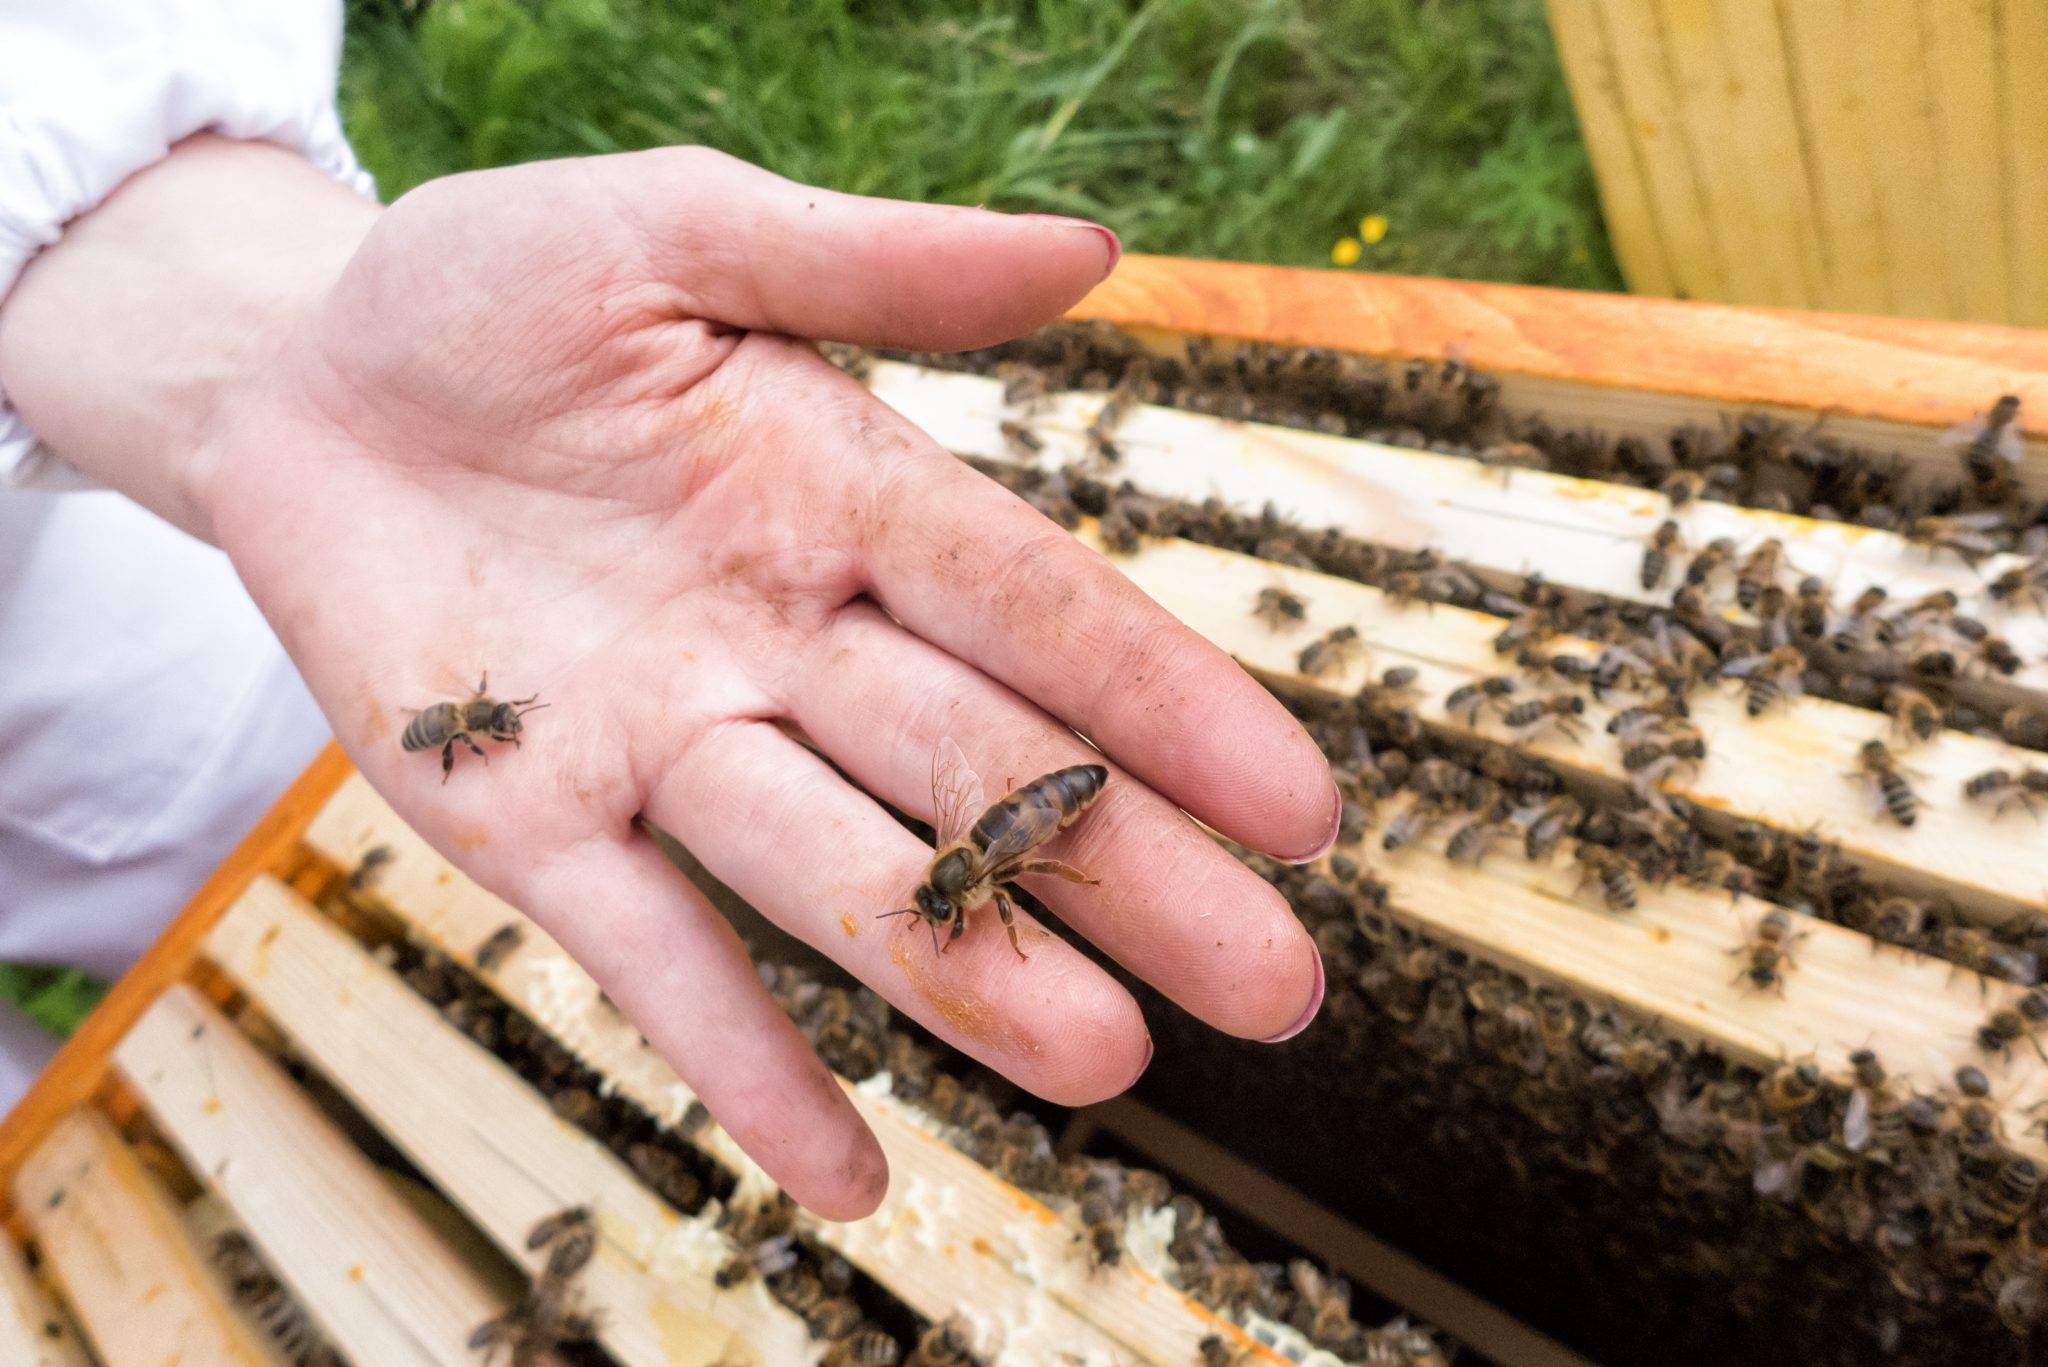 Пчелиная матка (королева): описание породы, виды, фото и видео